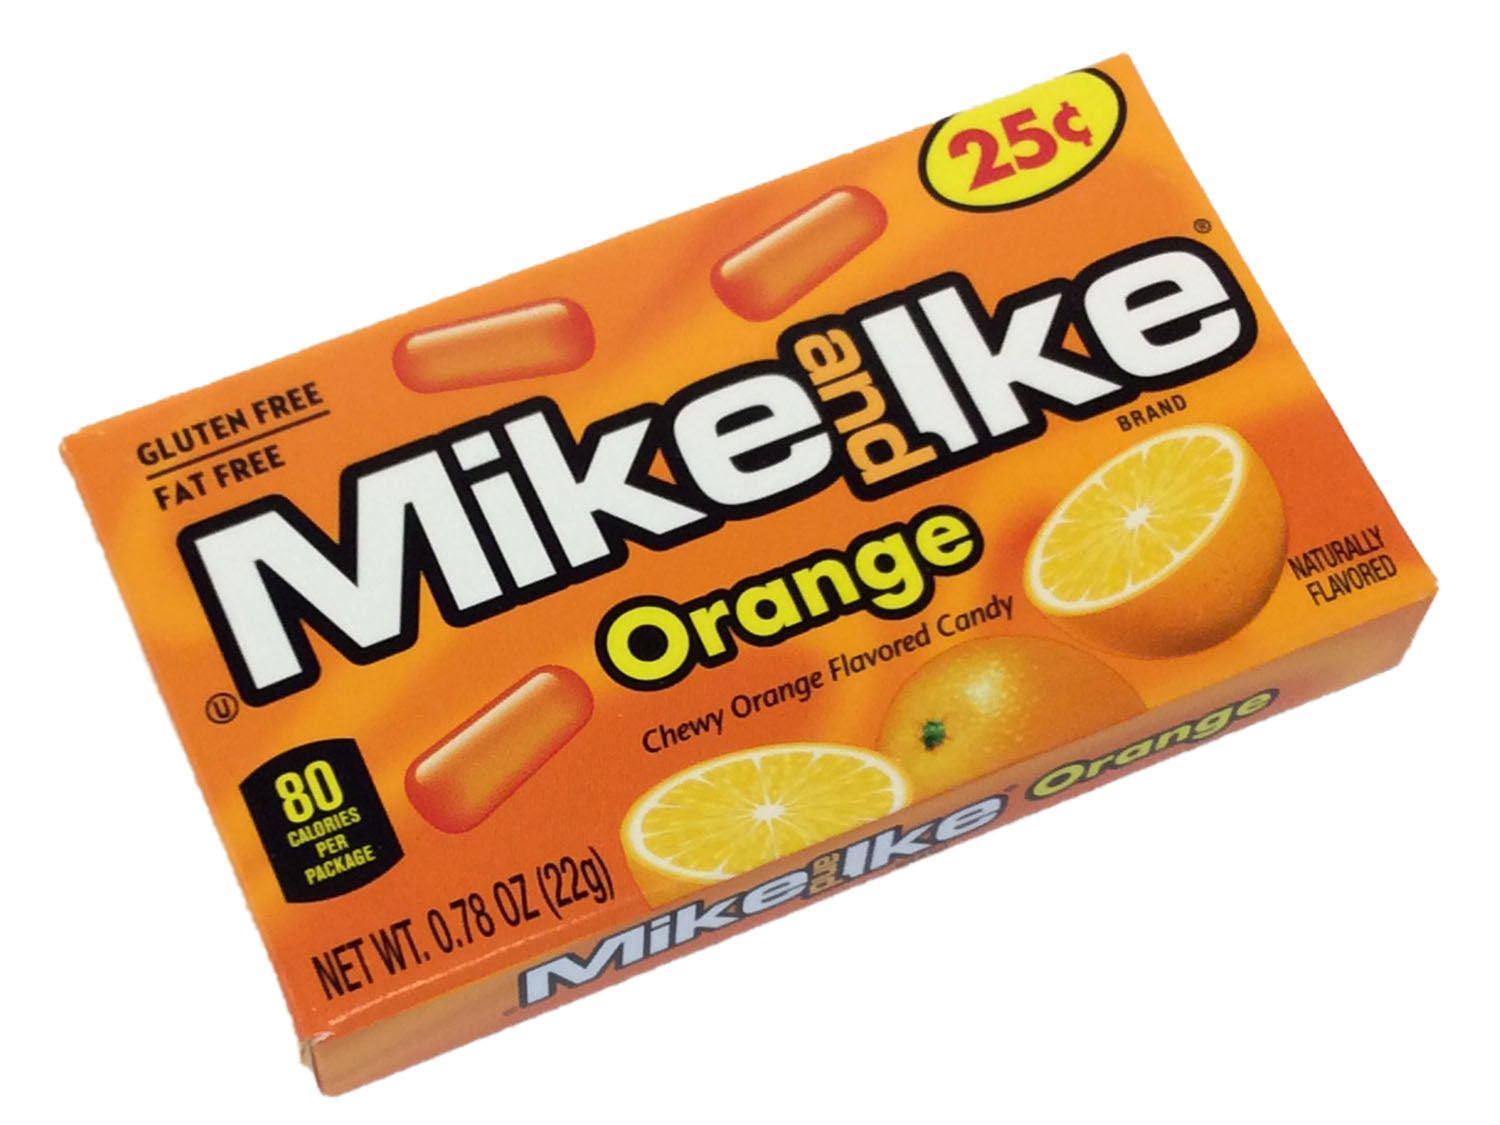 Mike & Ike Orange - 0.78 oz box